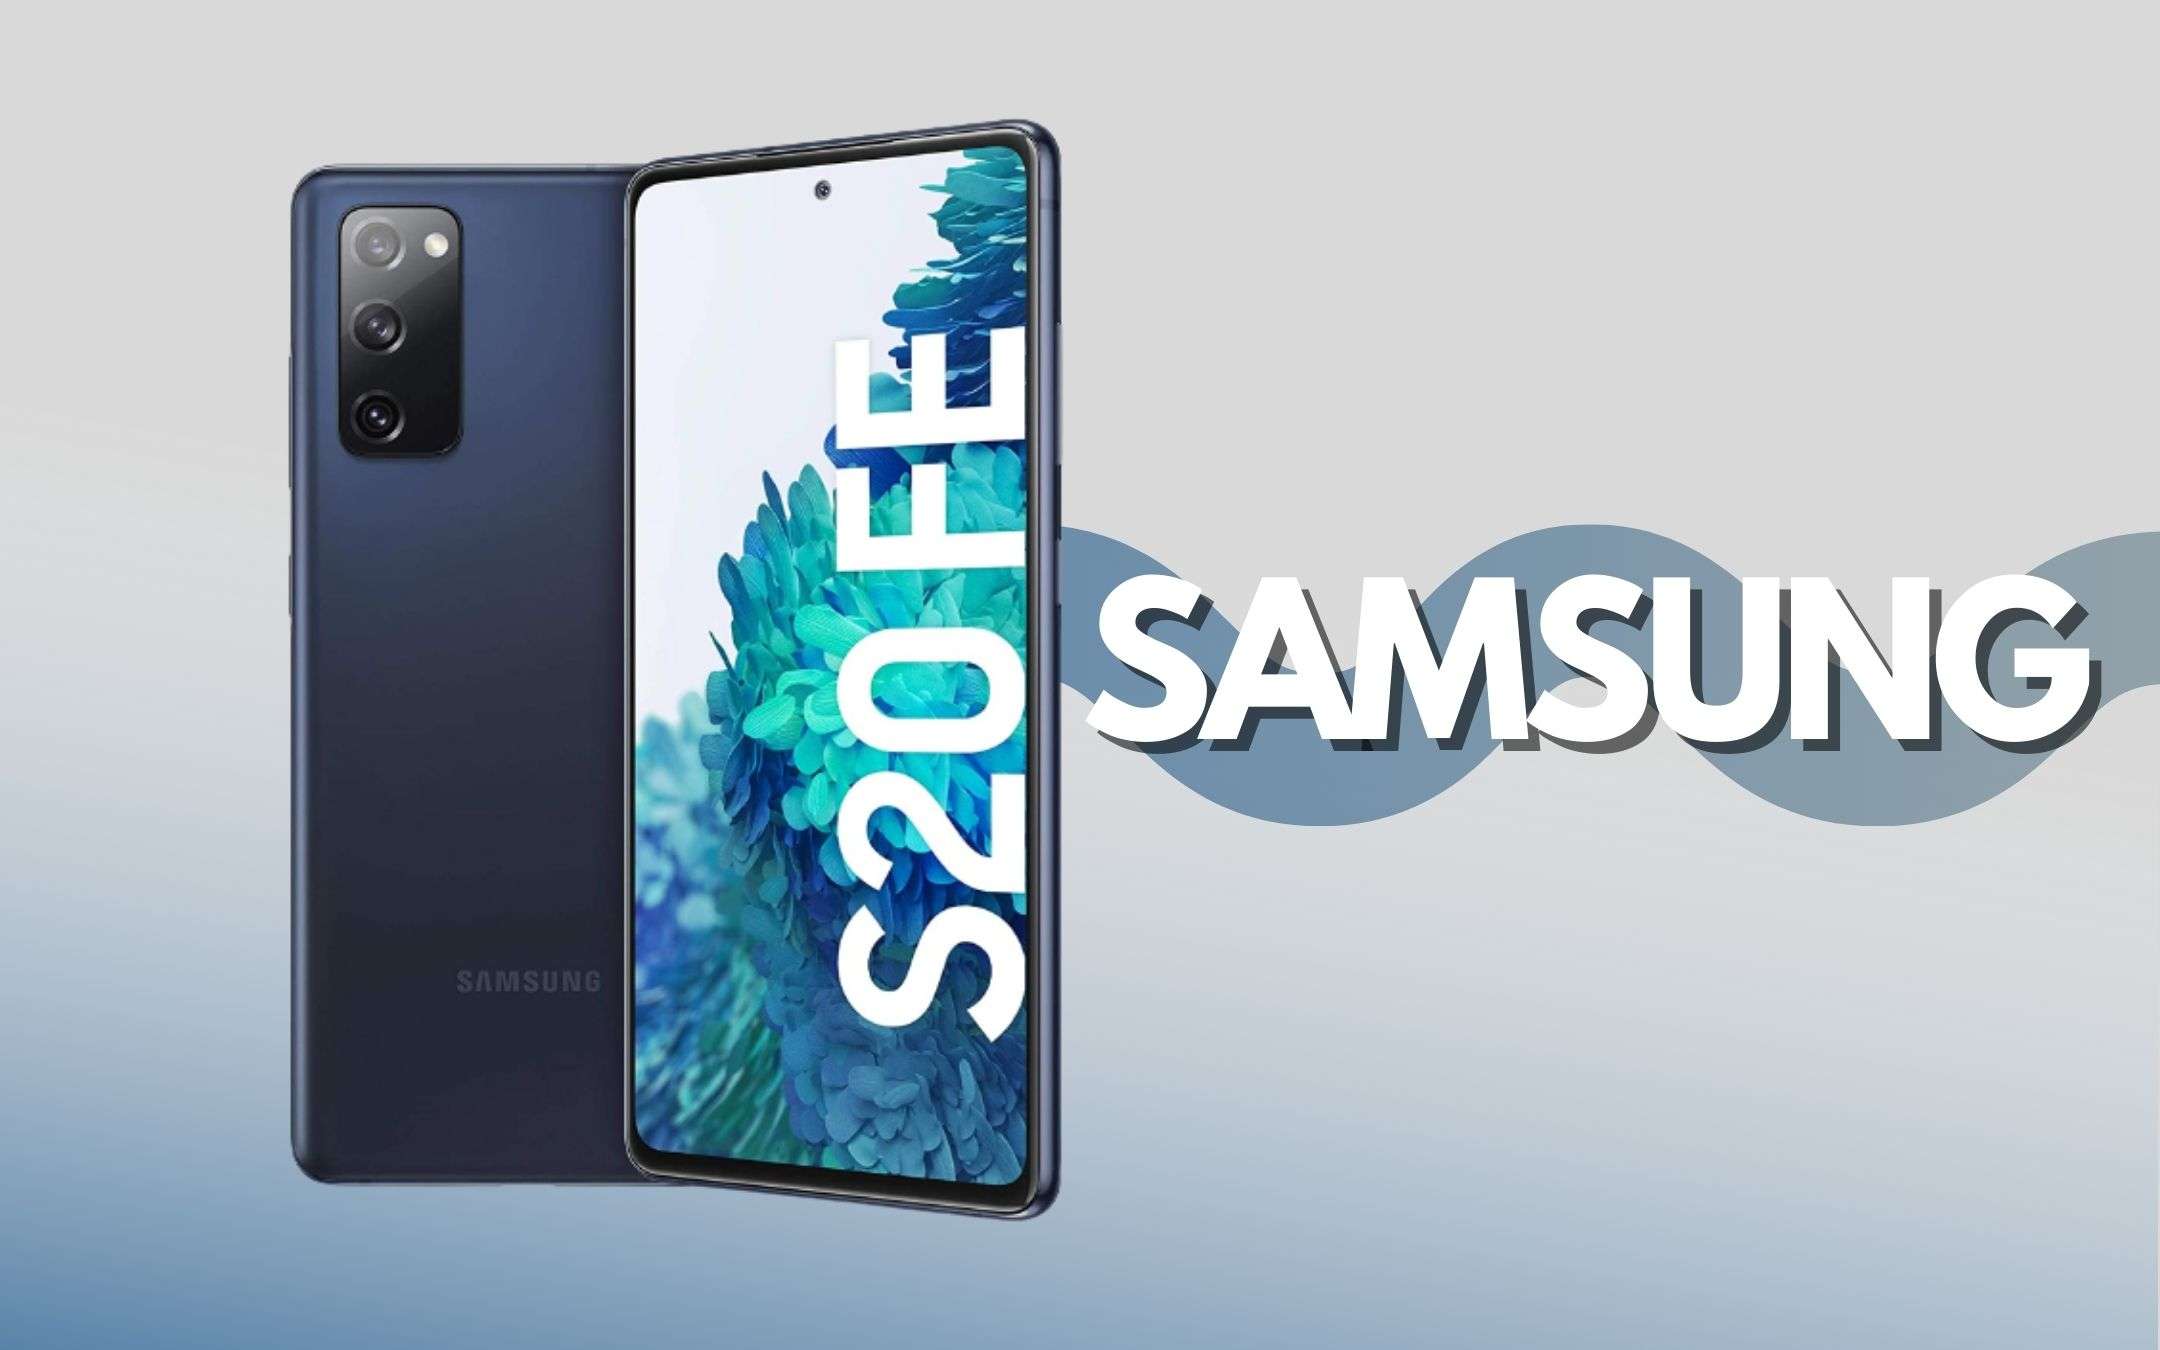 Samsung Galaxy S20 FE a prezzo incredibile (-200€)